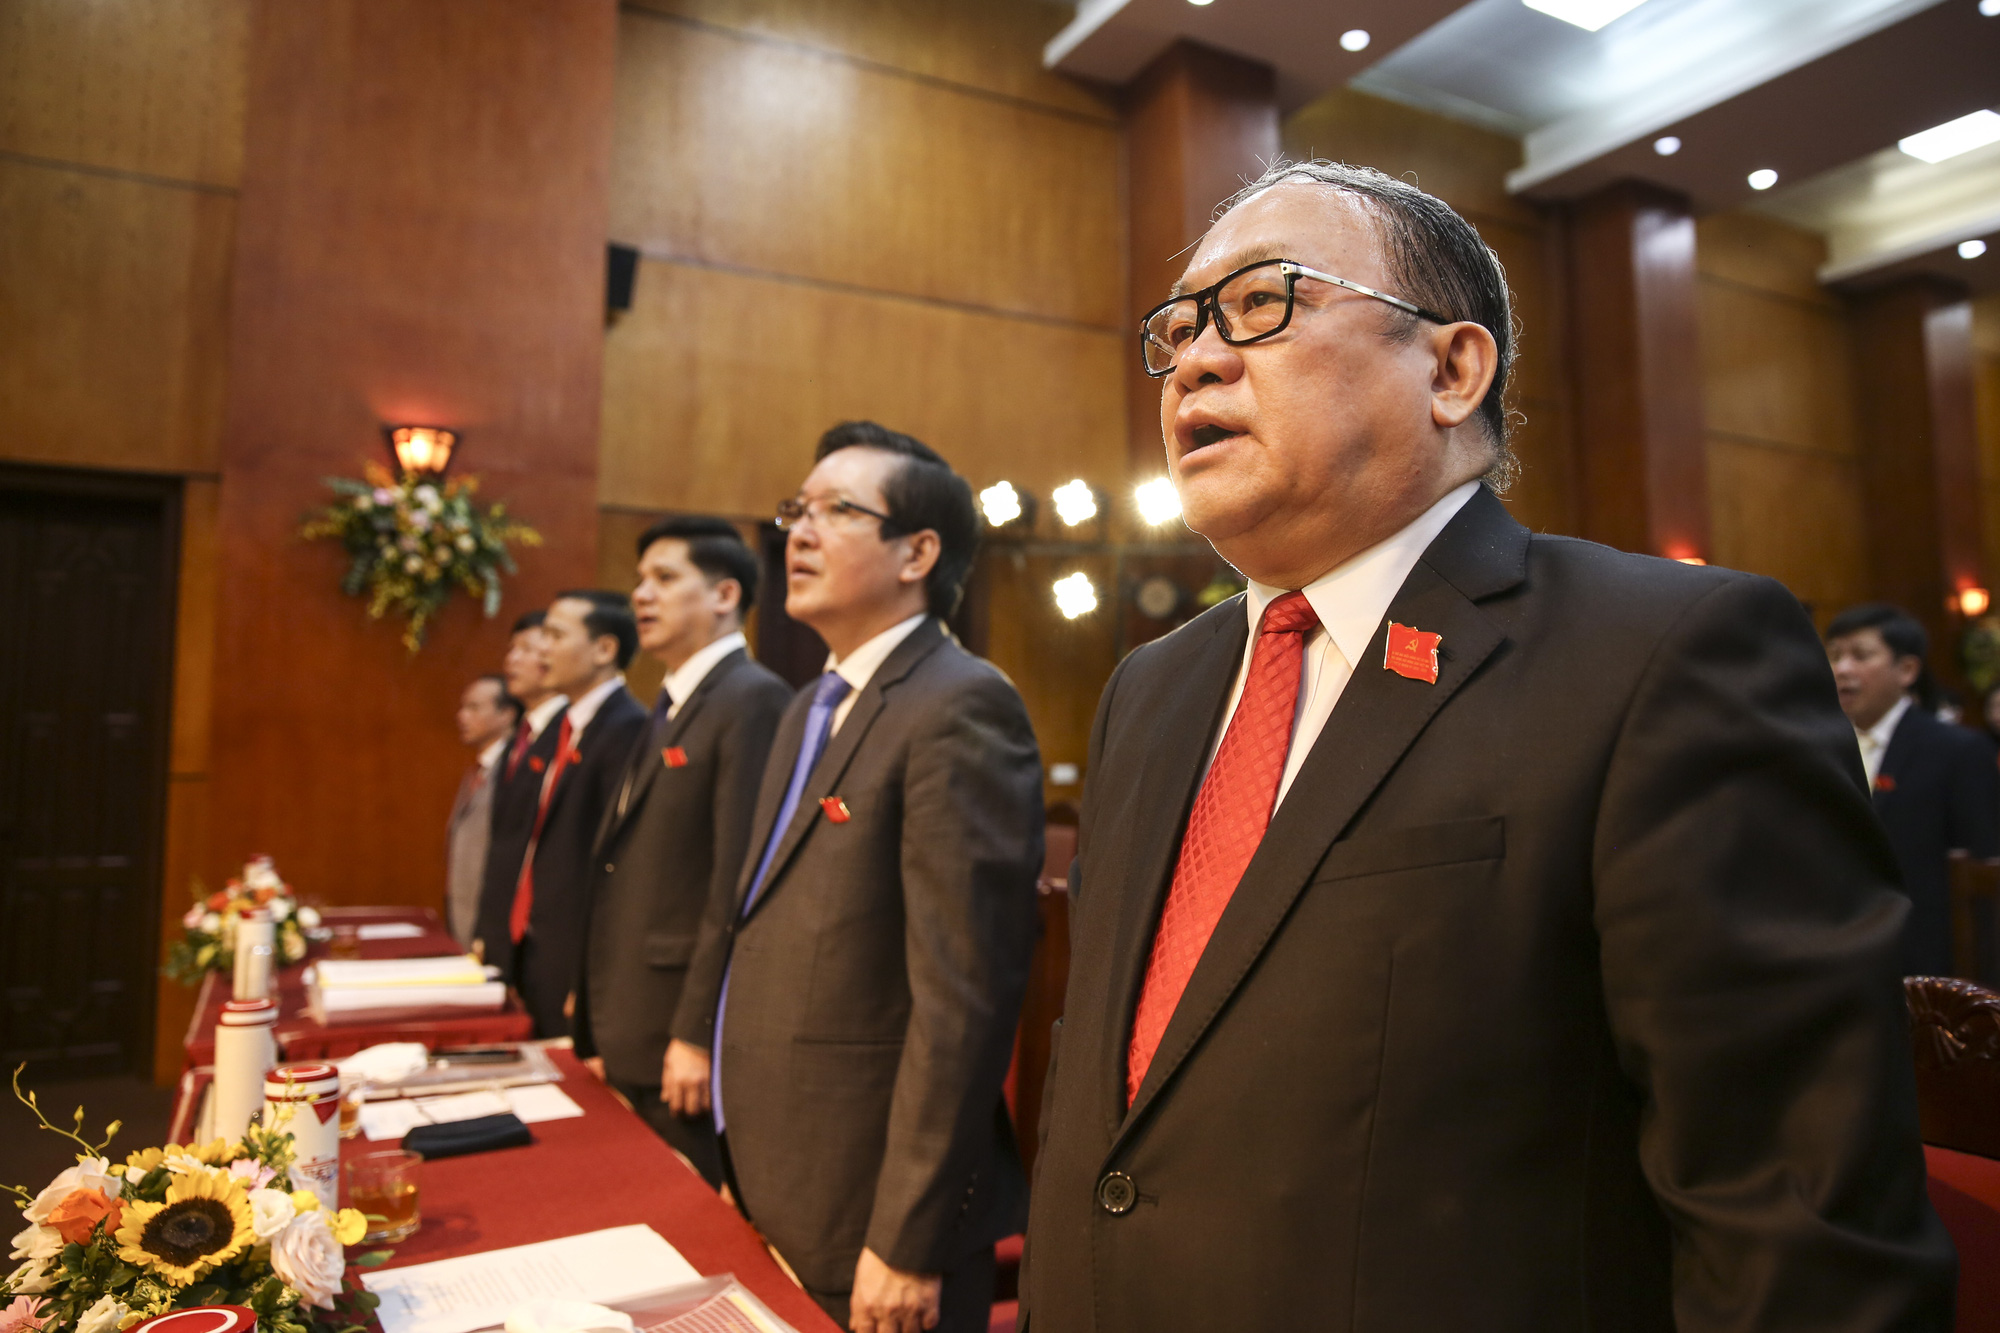 Khai mạc Đại hội đại biểu Đảng bộ Cơ quan Trung ương Hội Nông dân Việt Nam lần thứ IX - nhiệm kỳ 2020-2025 - Ảnh 1.